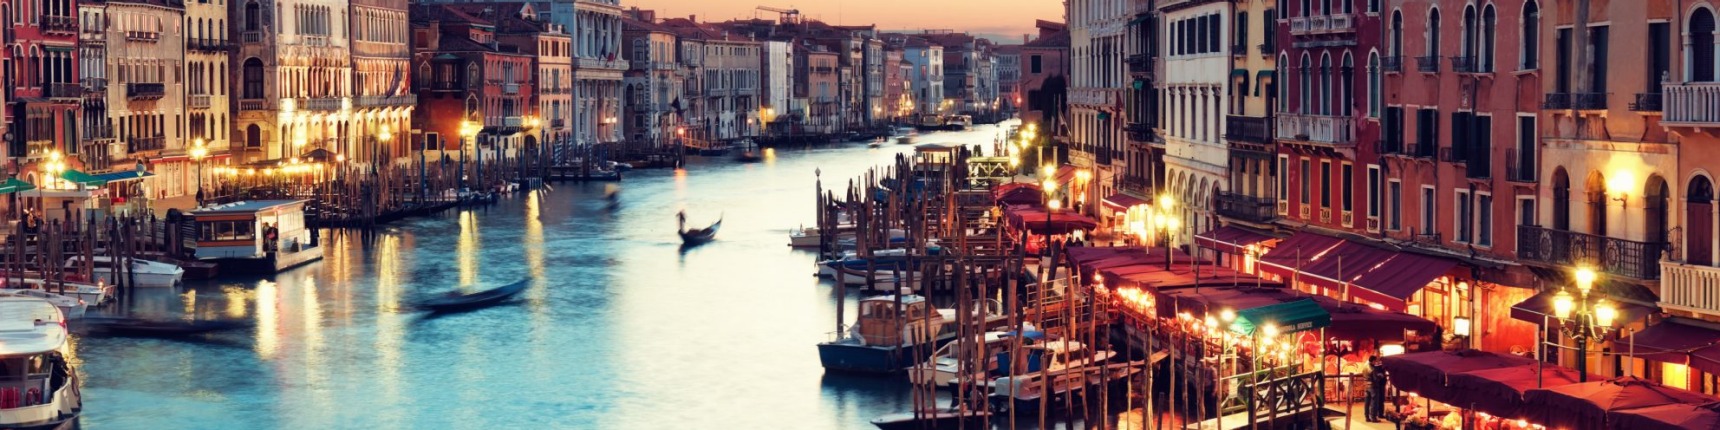 Venice, sunset